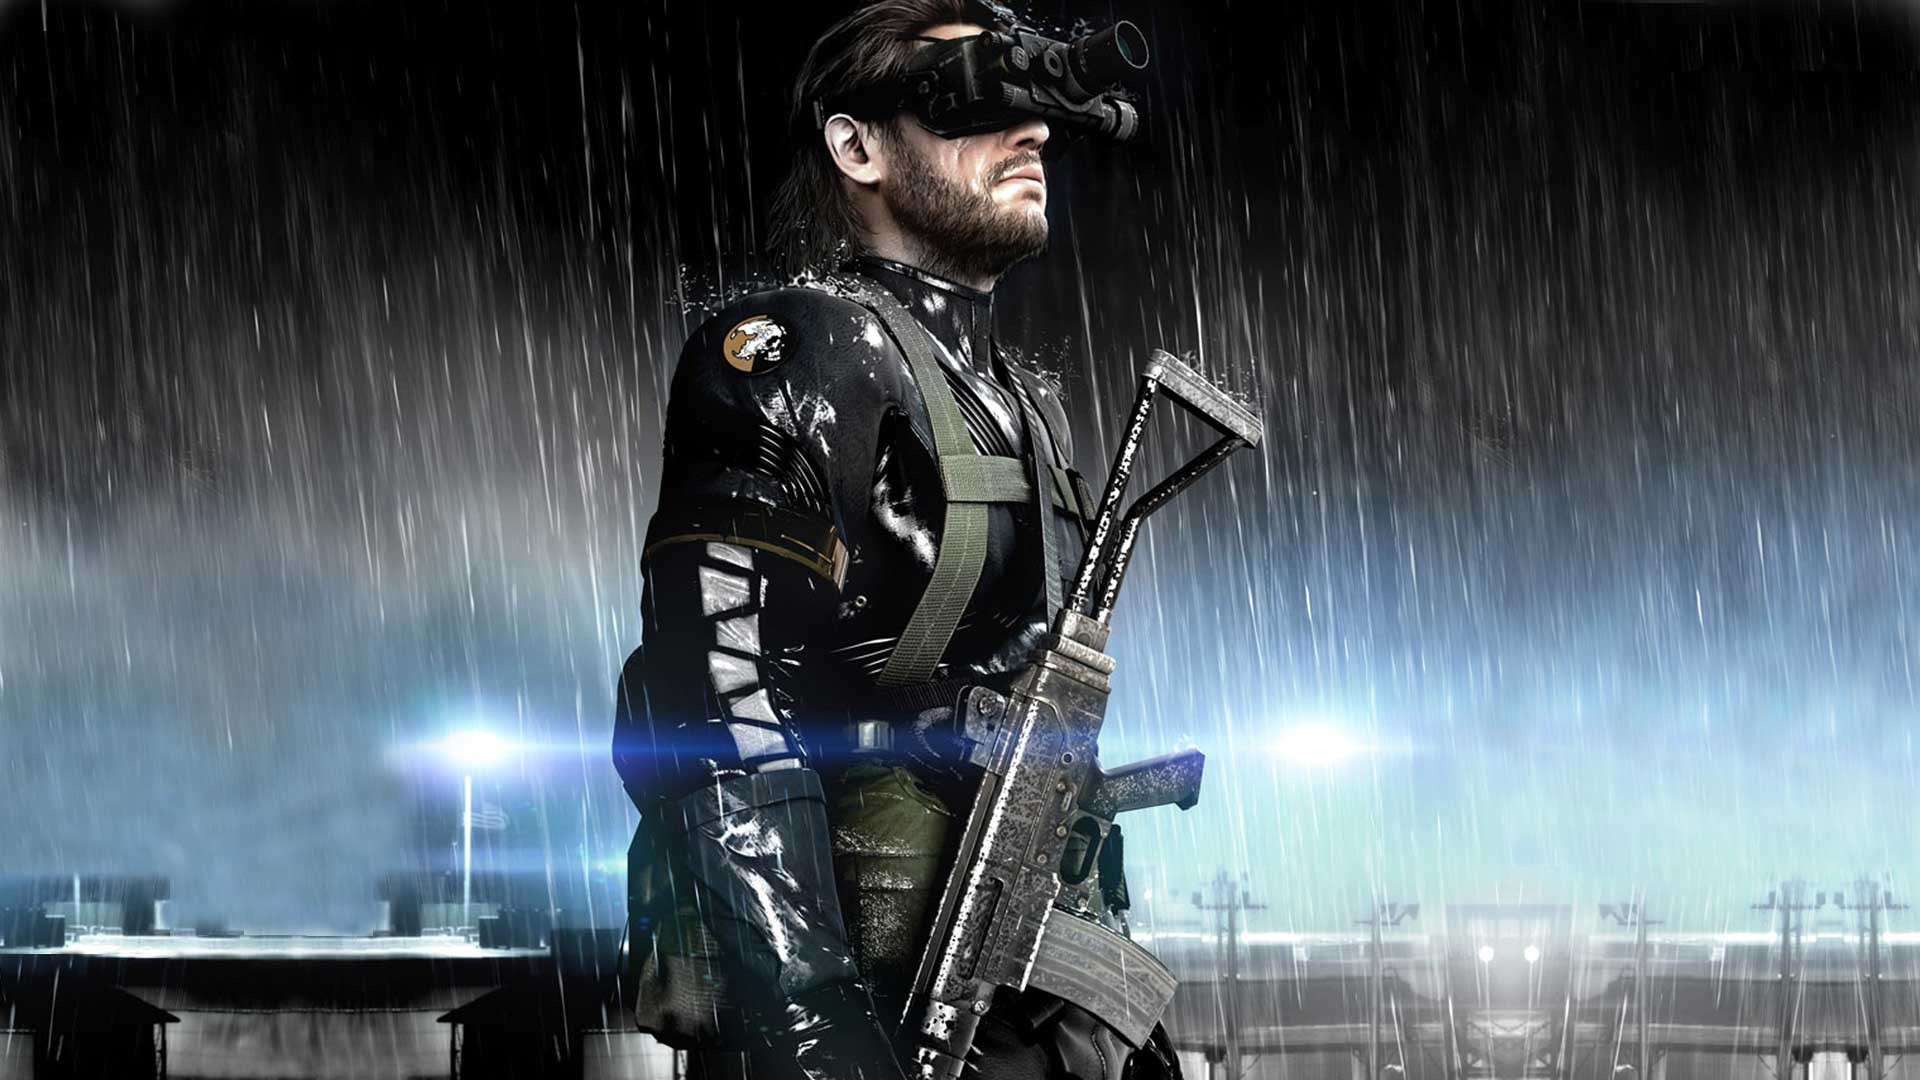 Metal Gear Solid V Ground Zero